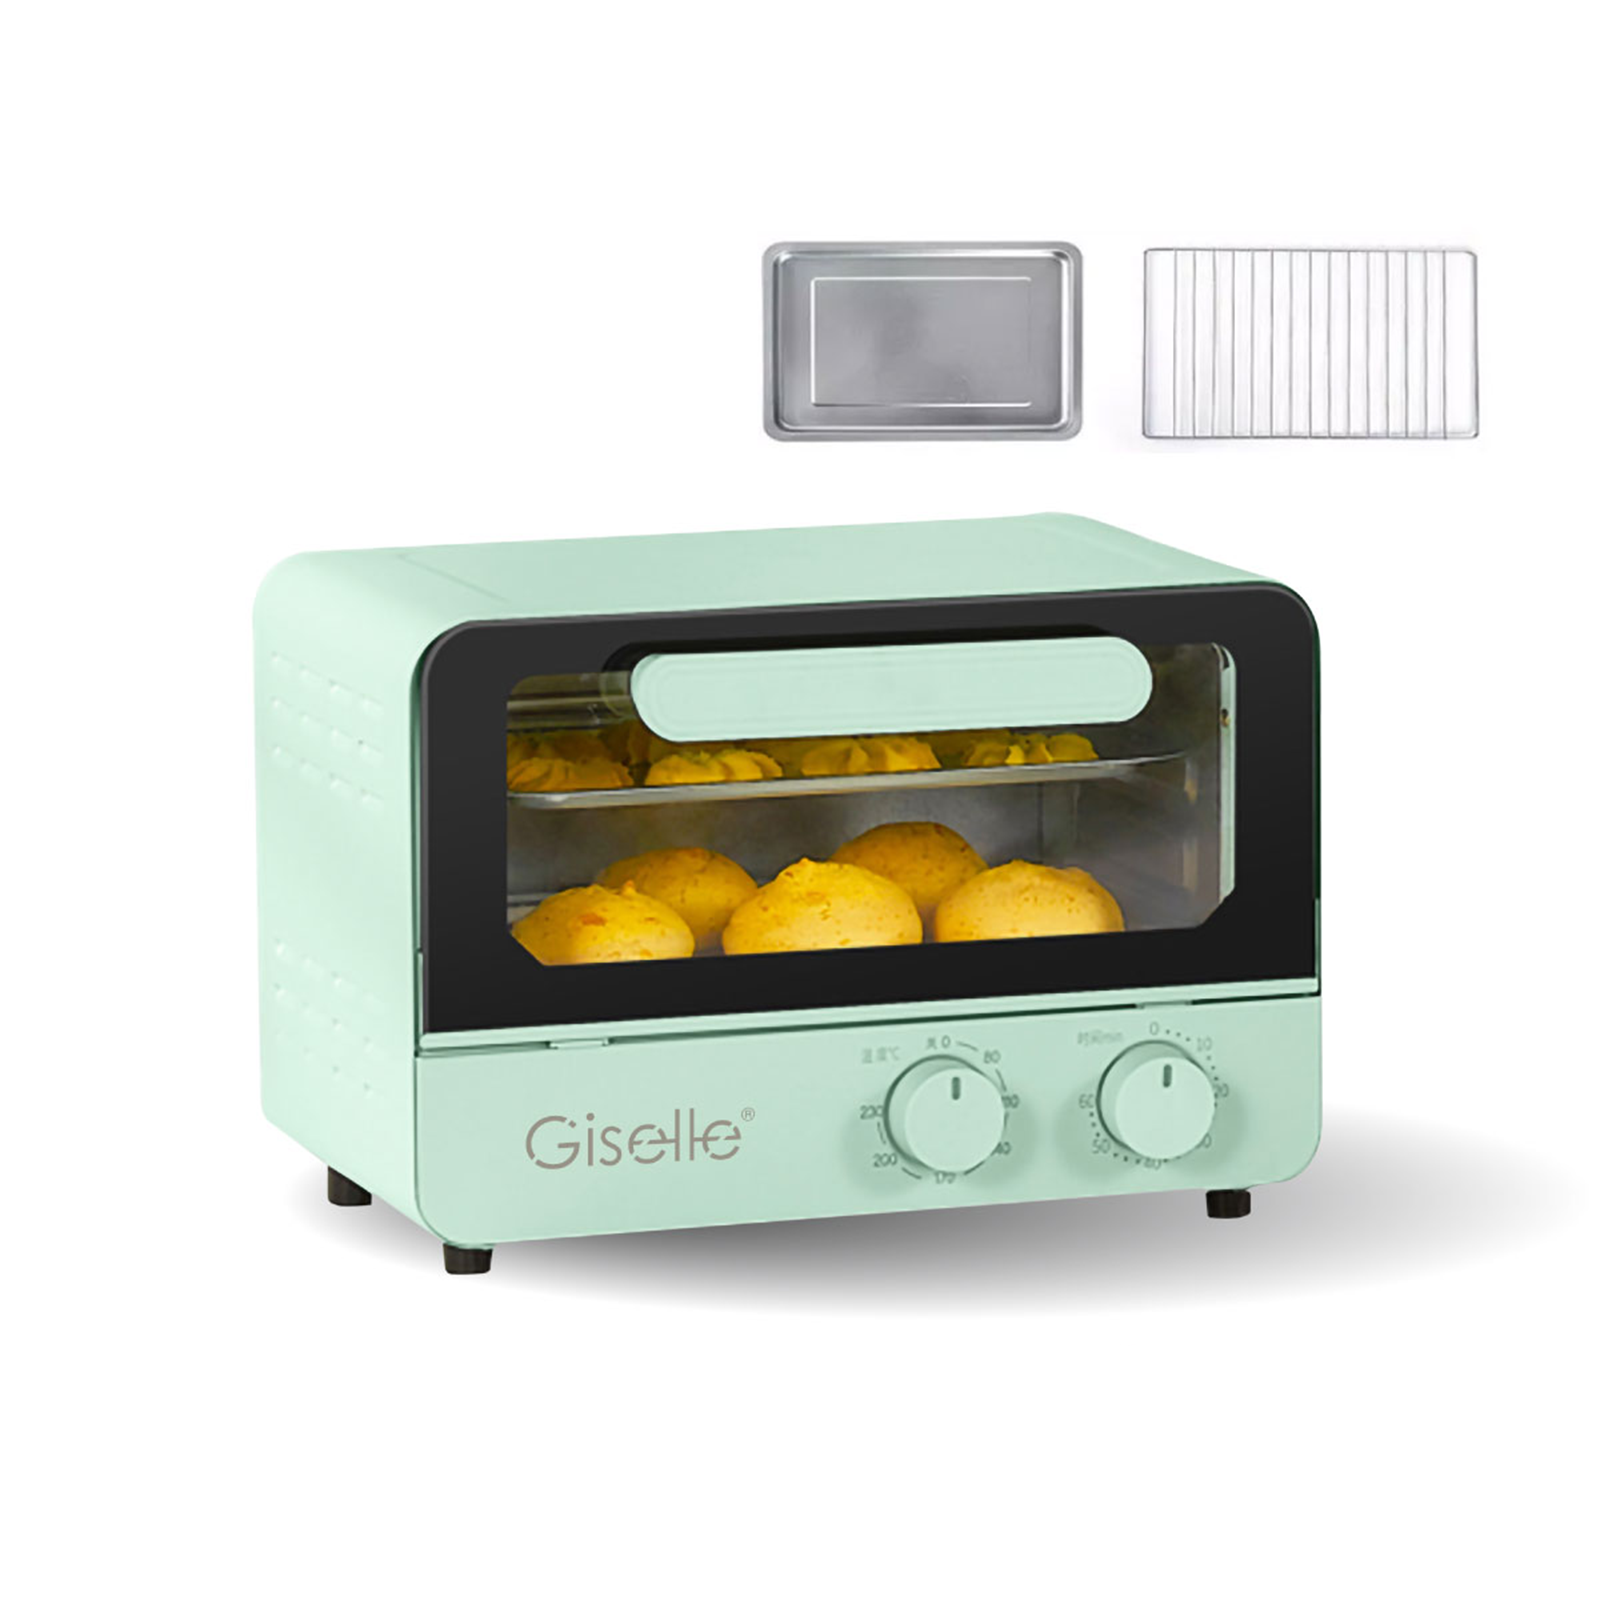 Giselle Electric Multifunction Oven Toast/Bake/Broil/Roast with Knob Adjustment (12L) KEA0344 网红小清新系列